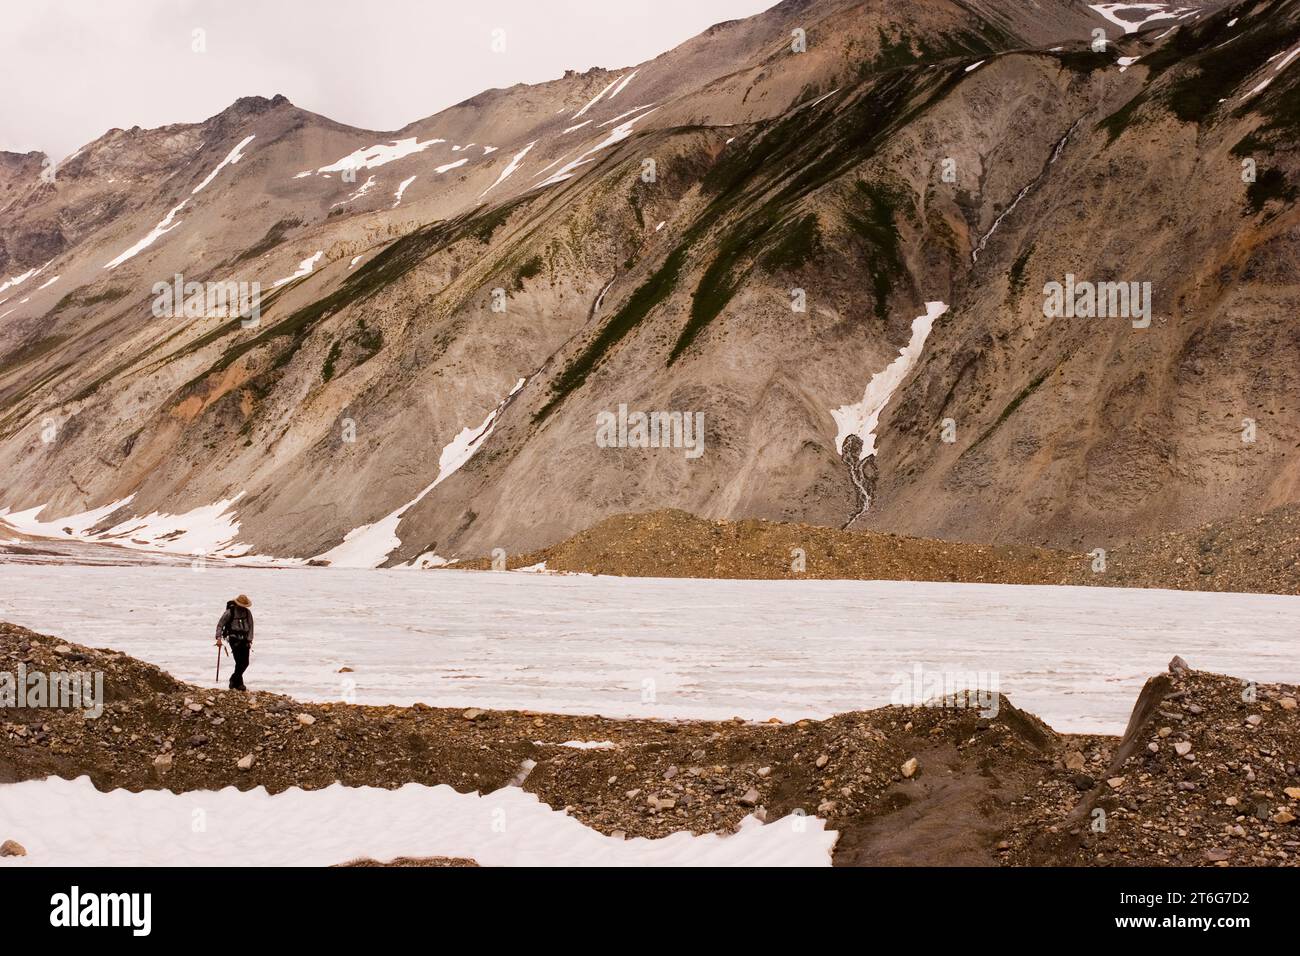 Un géologue descend une moraine, le glacier Jarvis, parc provincial Tatshenshini-Alsek, Colombie-Britannique, Canada. Banque D'Images